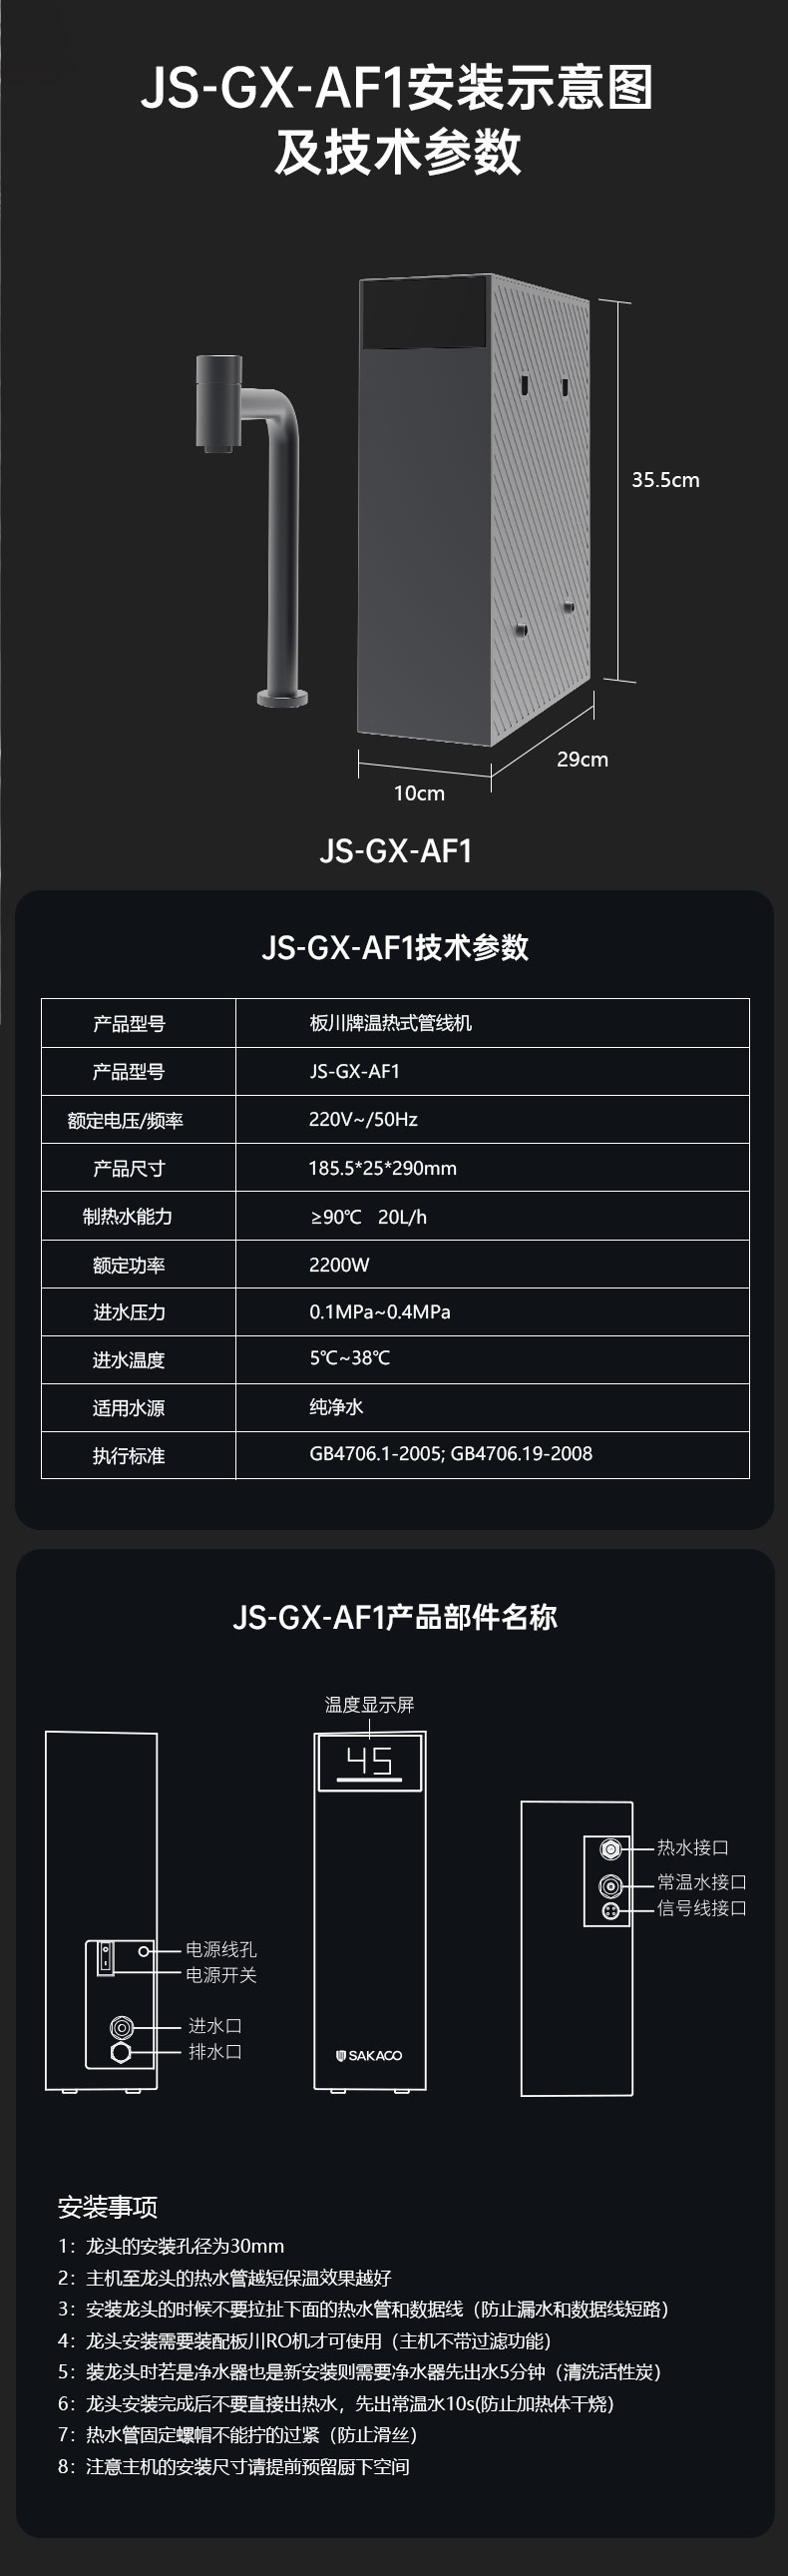 温热式管线机JS-GX-AF1